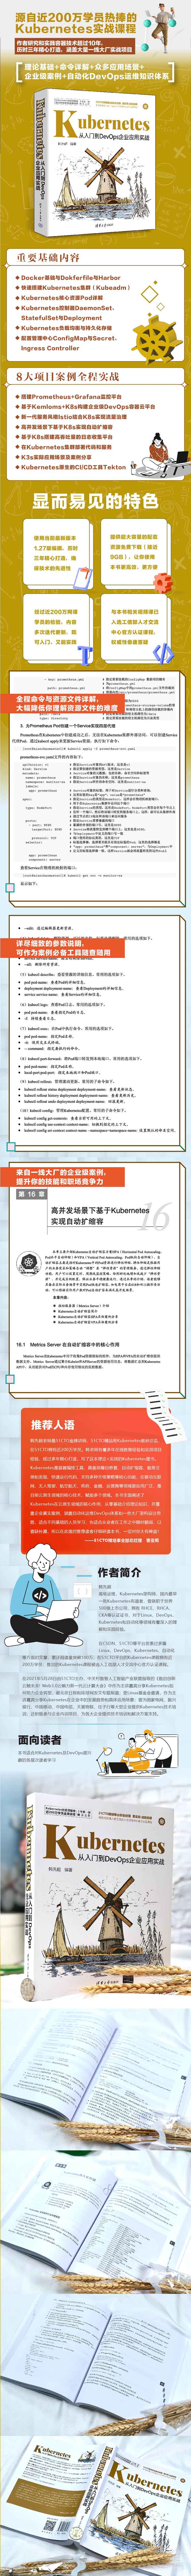 Kubernetes从入门到DevOps企业应用实战 韩先超 著 清华大学出版社